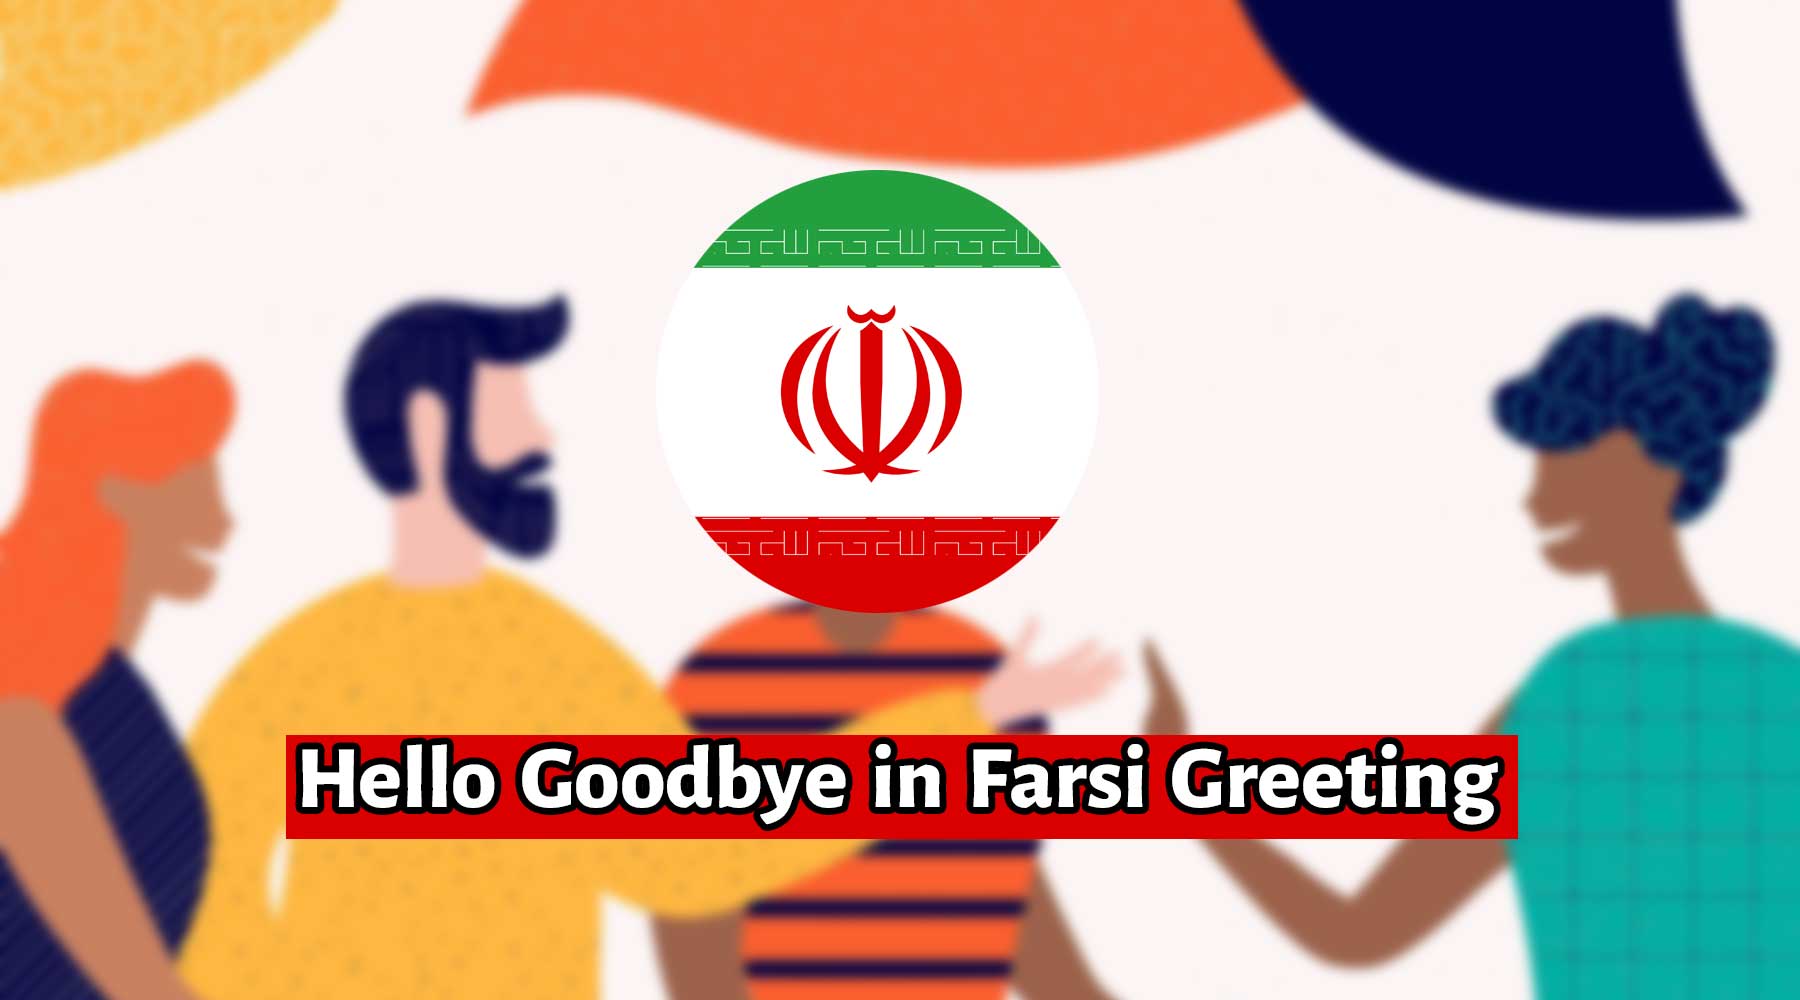 Greetings in Farsi, hello/goodbye